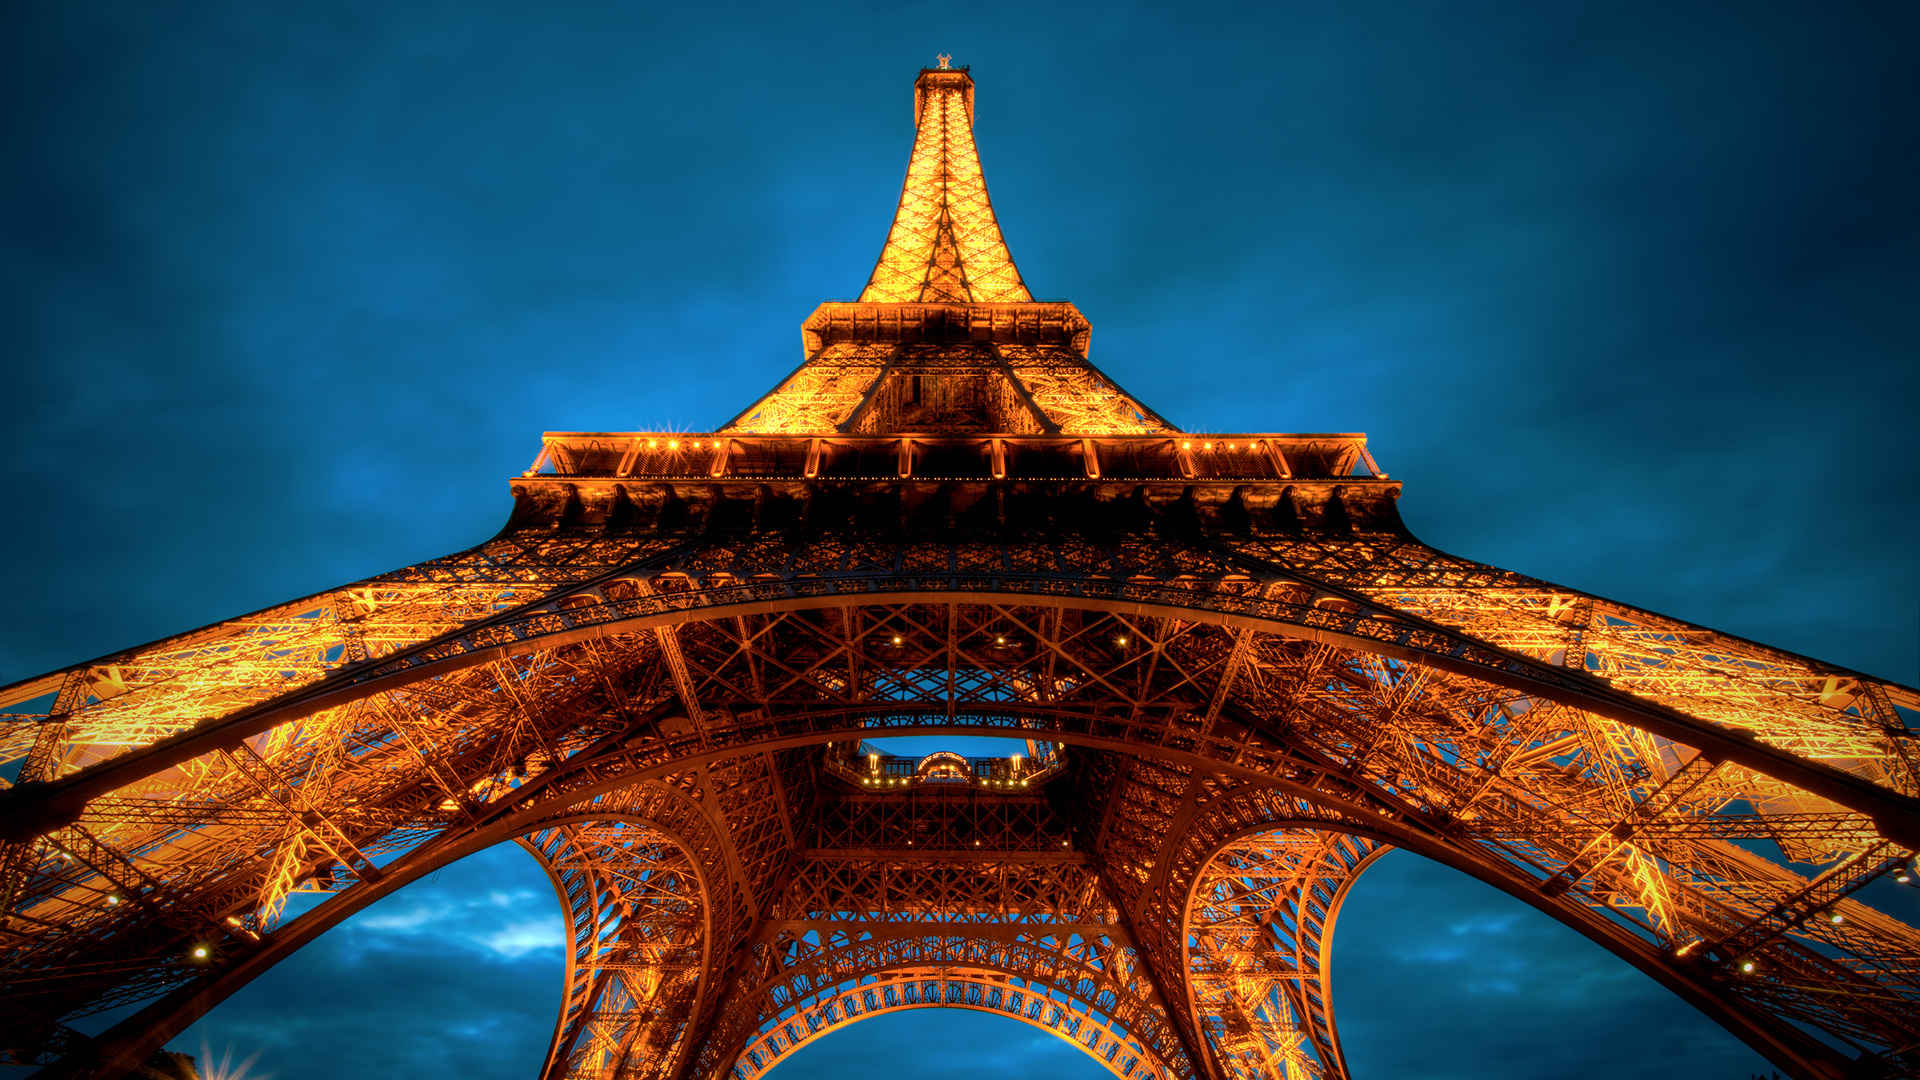 巴黎铁塔灯火通明近照壁纸-